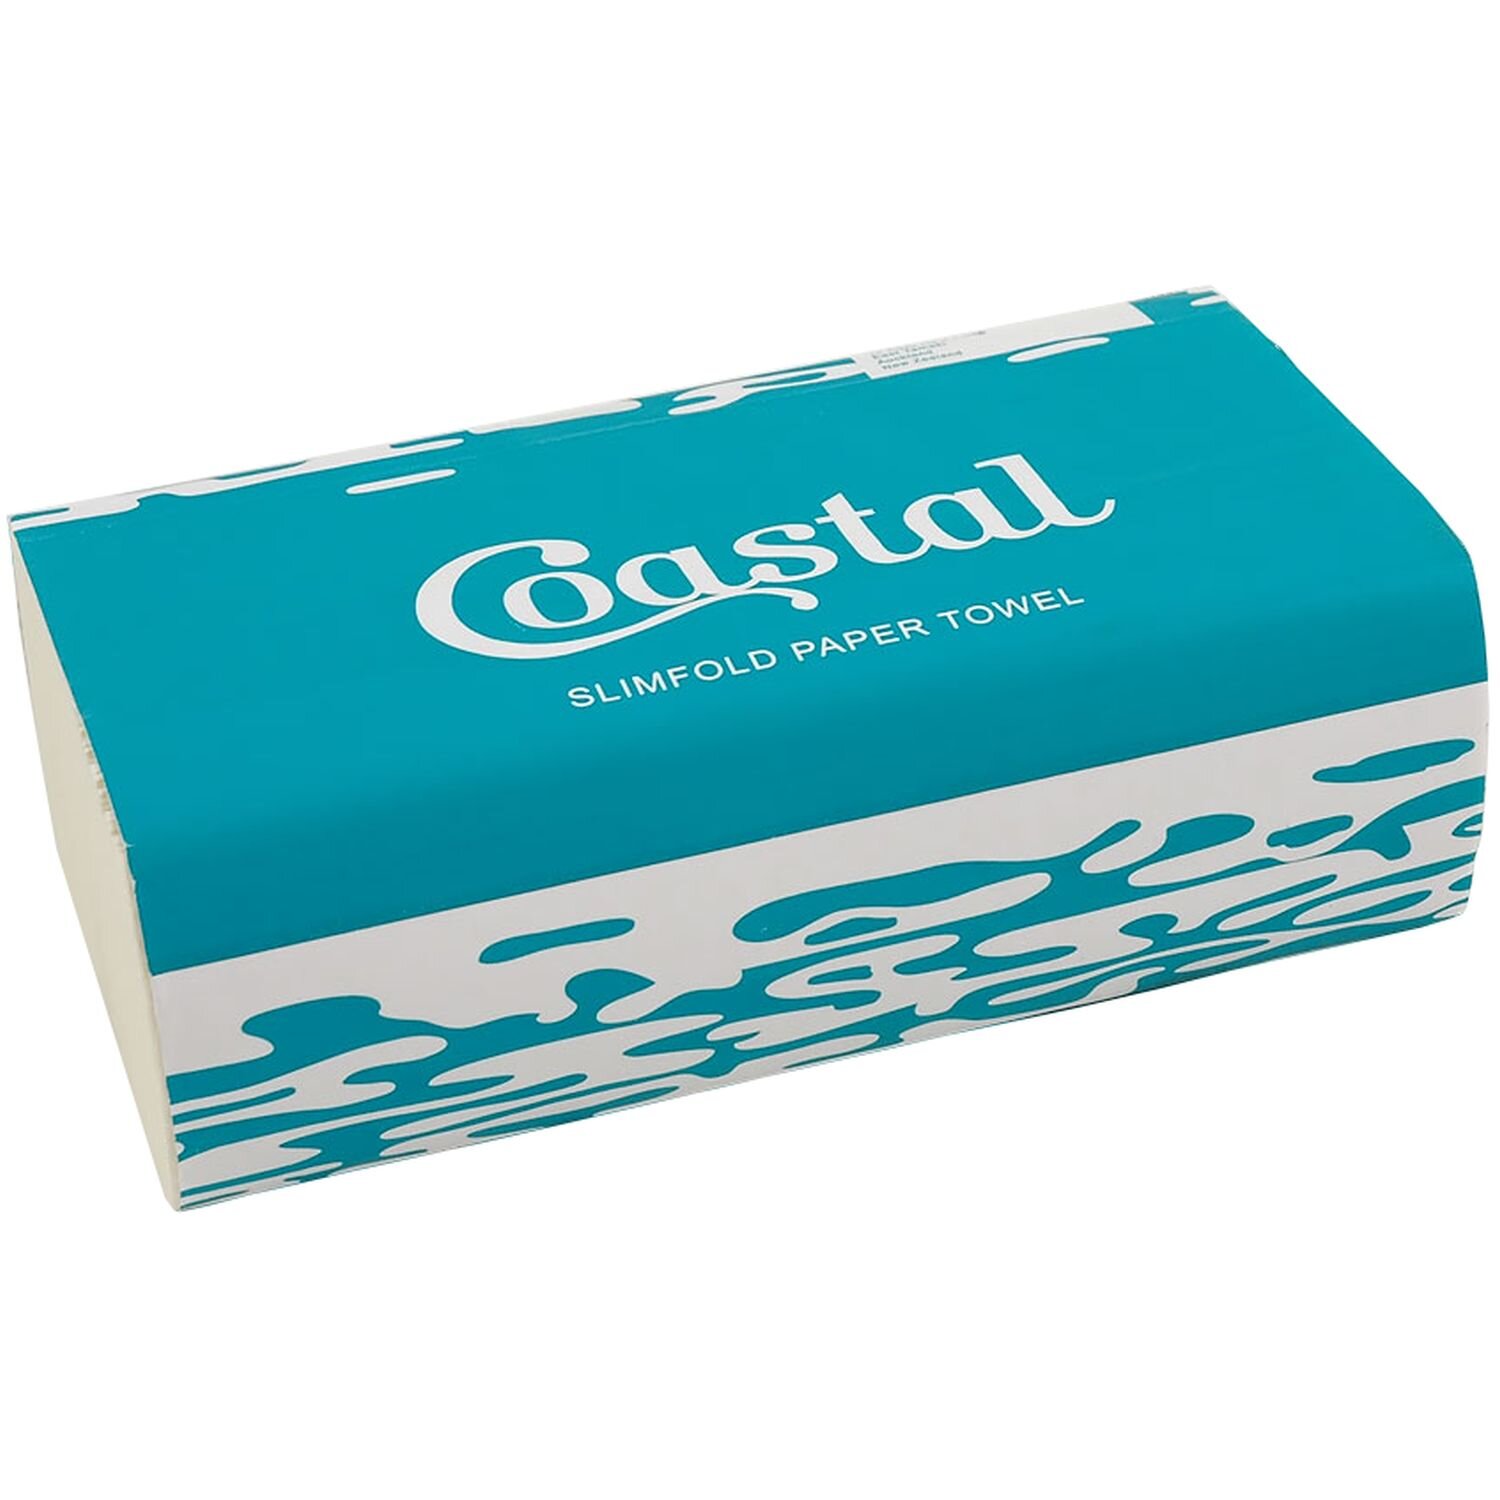 Coastal Slimfold Towel Premium 4000/Ctn